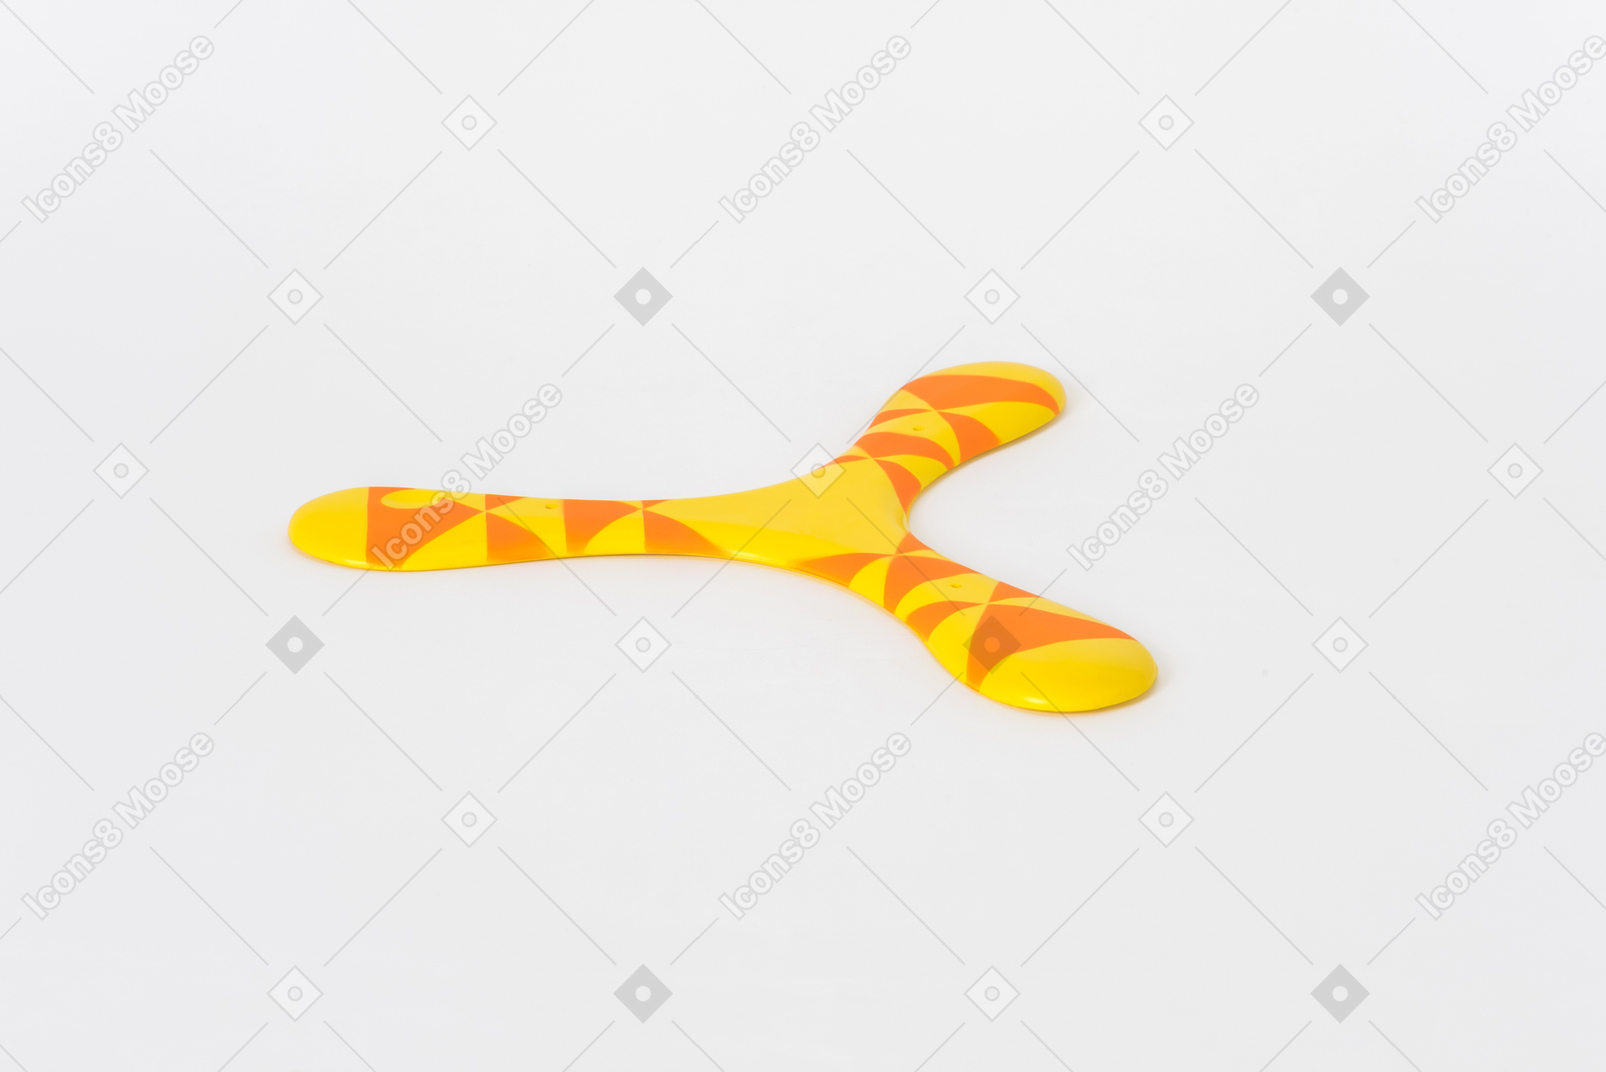 Orange und gelber bumerang auf weißem hintergrund